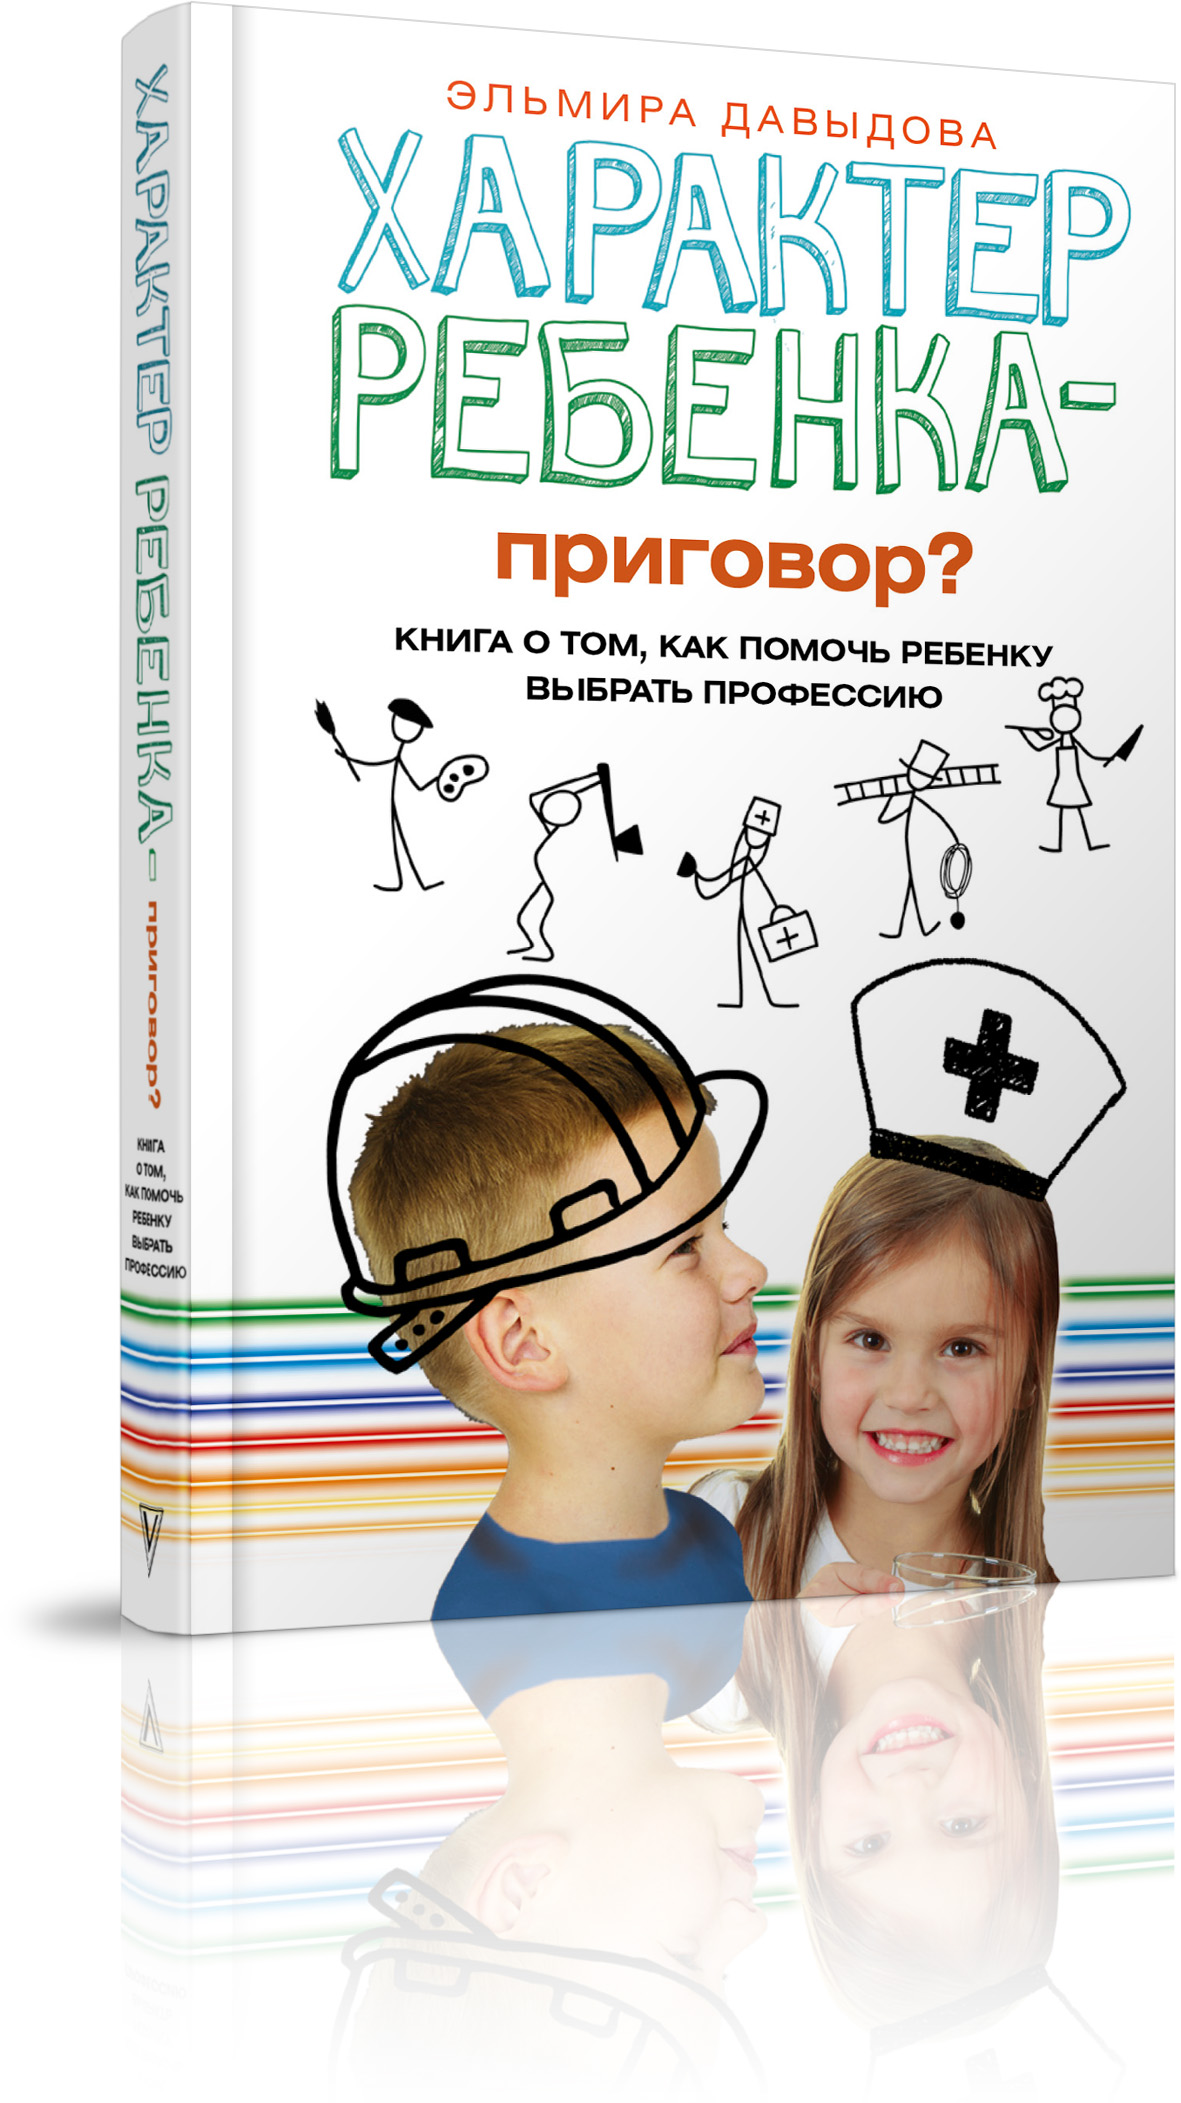 Характер ребенка - приговор? Книга о том, как помочь ребенку выбрать профессию. Эльмира Давыдова